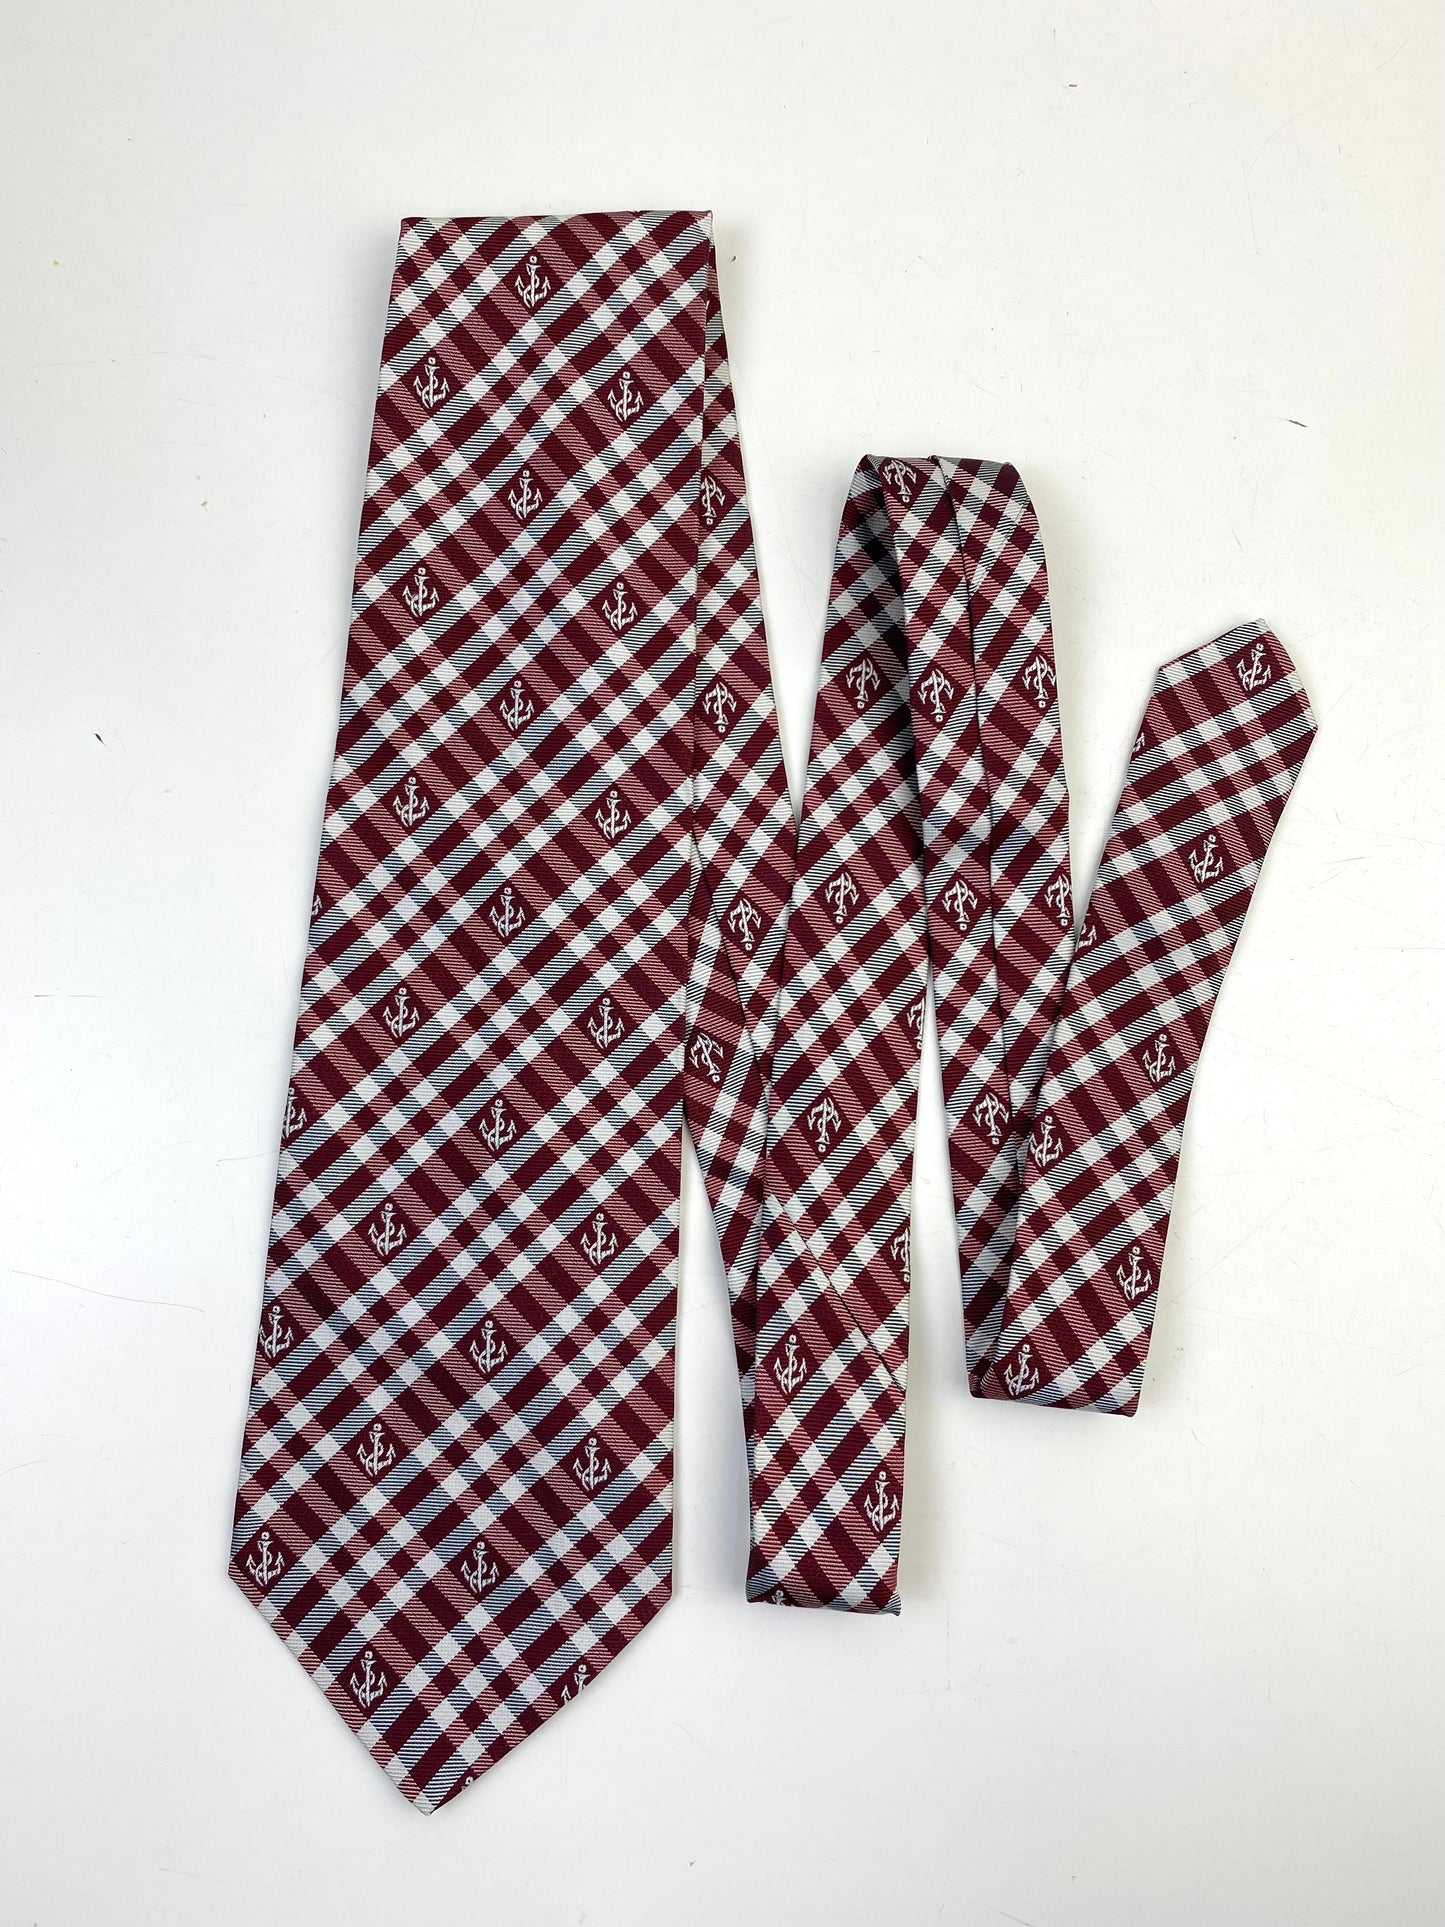 90s Deadstock Silk Necktie, Men's Vintage Wine/ Grey Plaid Anchor Pattern Tie, NOS